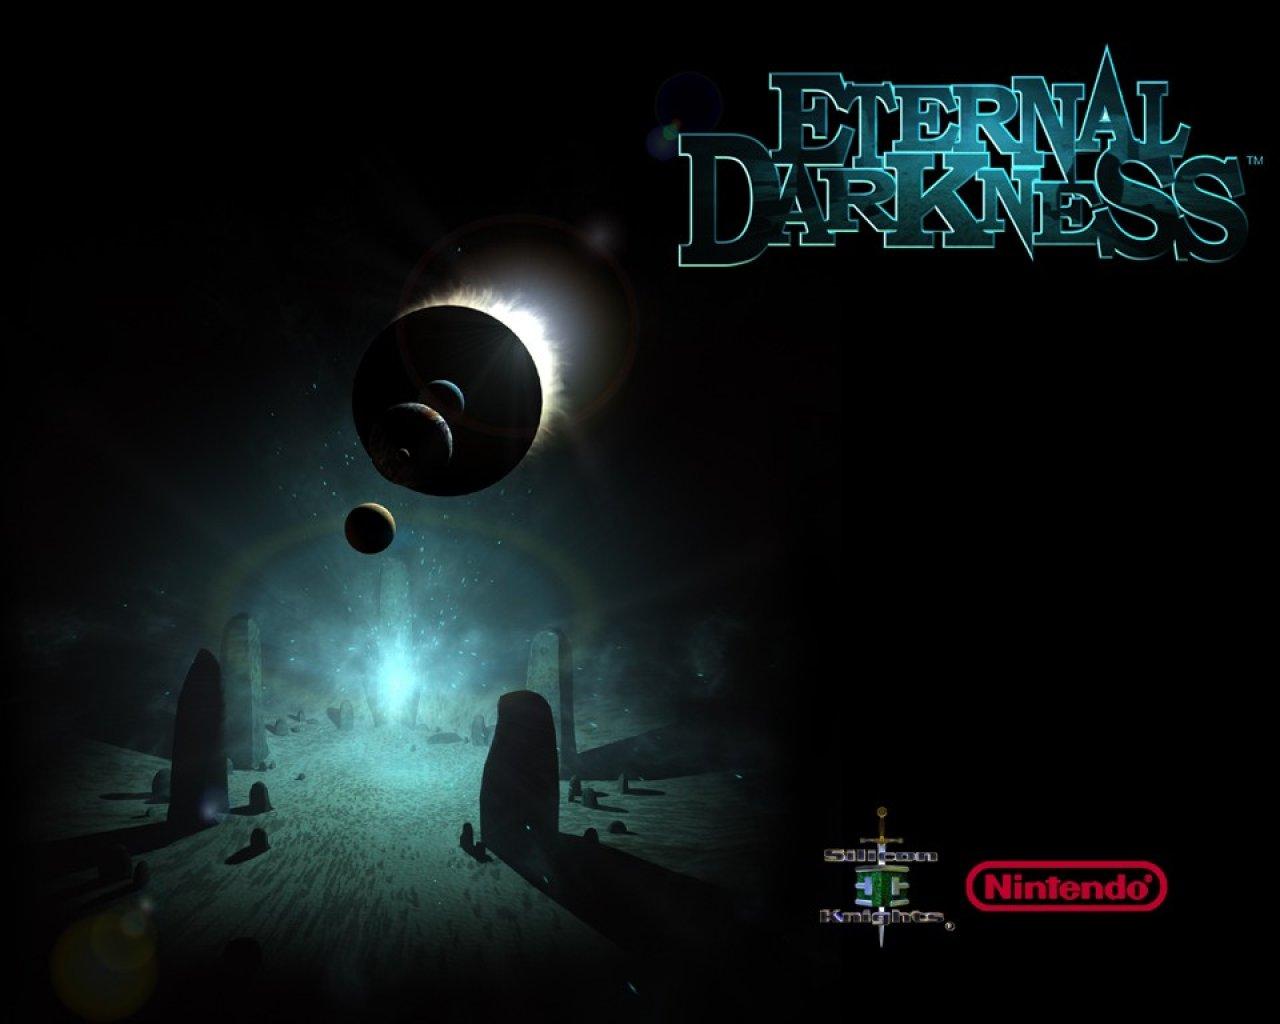 Shadow of the Eternals Wii U Opener